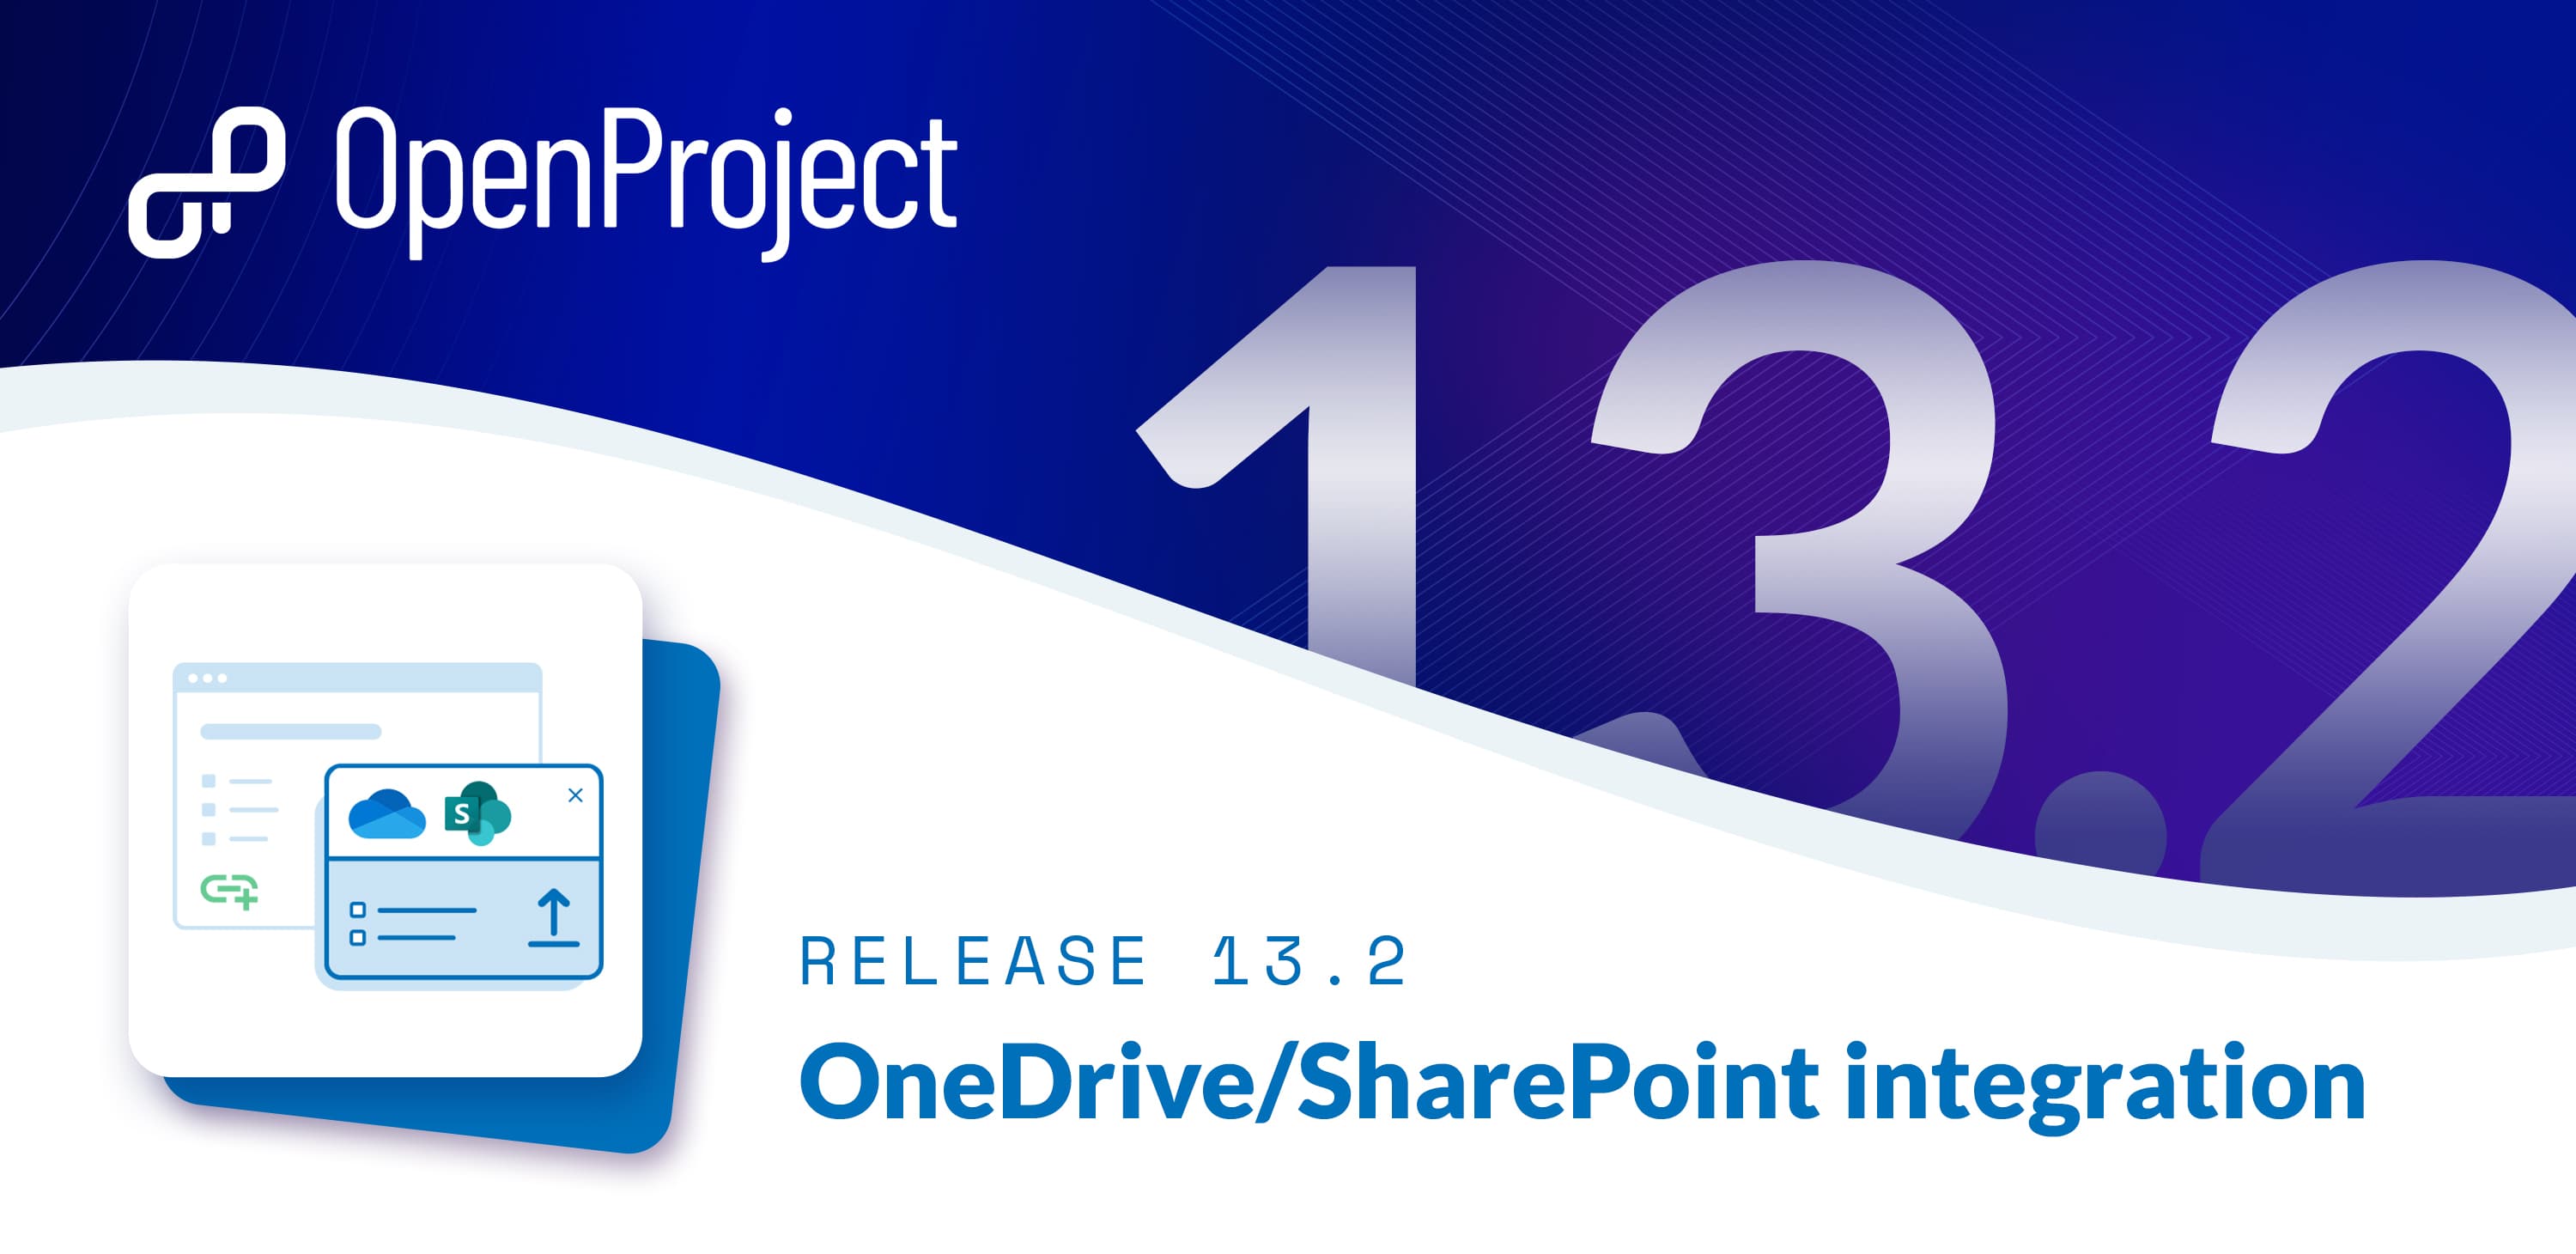 OpenProject Release 13.2